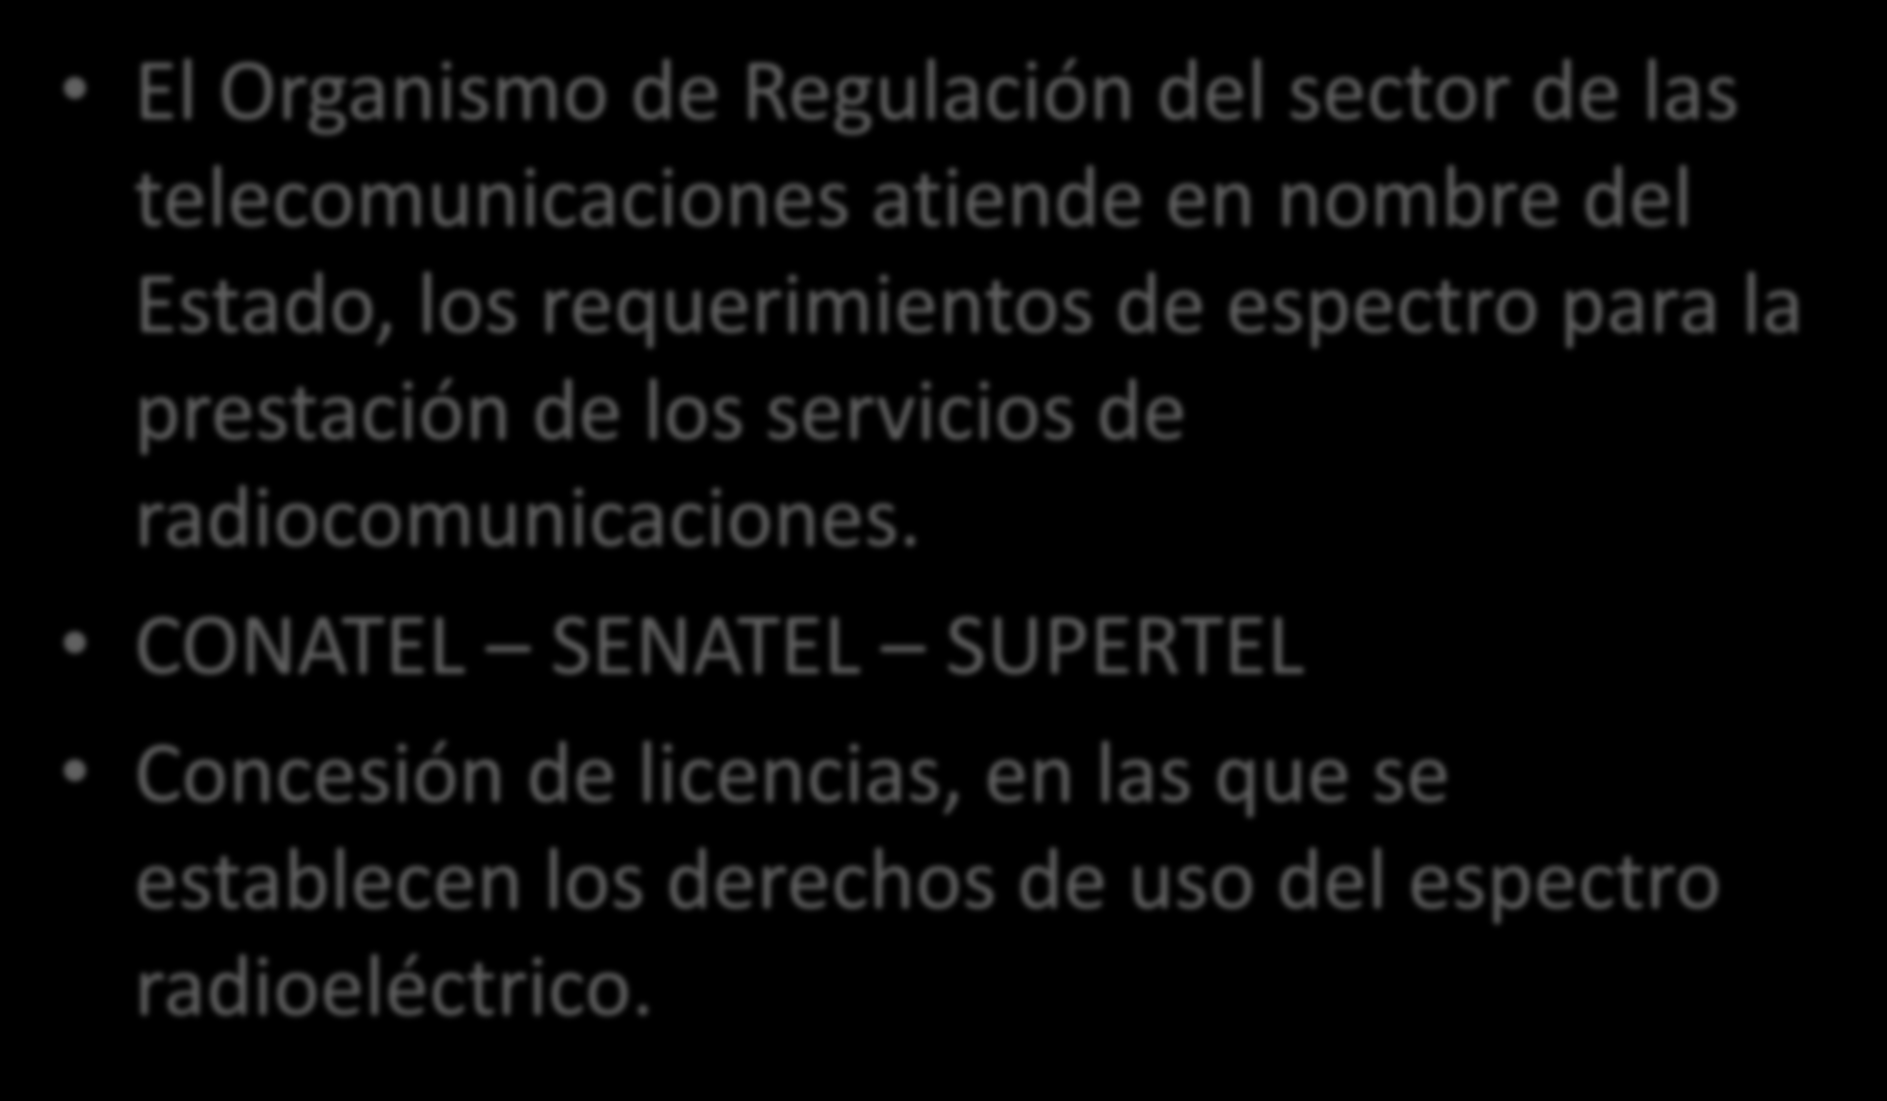 Asignación del Espectro Radioeléctrico 1/4 El Organismo de Regulación del sector de las telecomunicaciones atiende en nombre del Estado, los requerimientos de espectro para